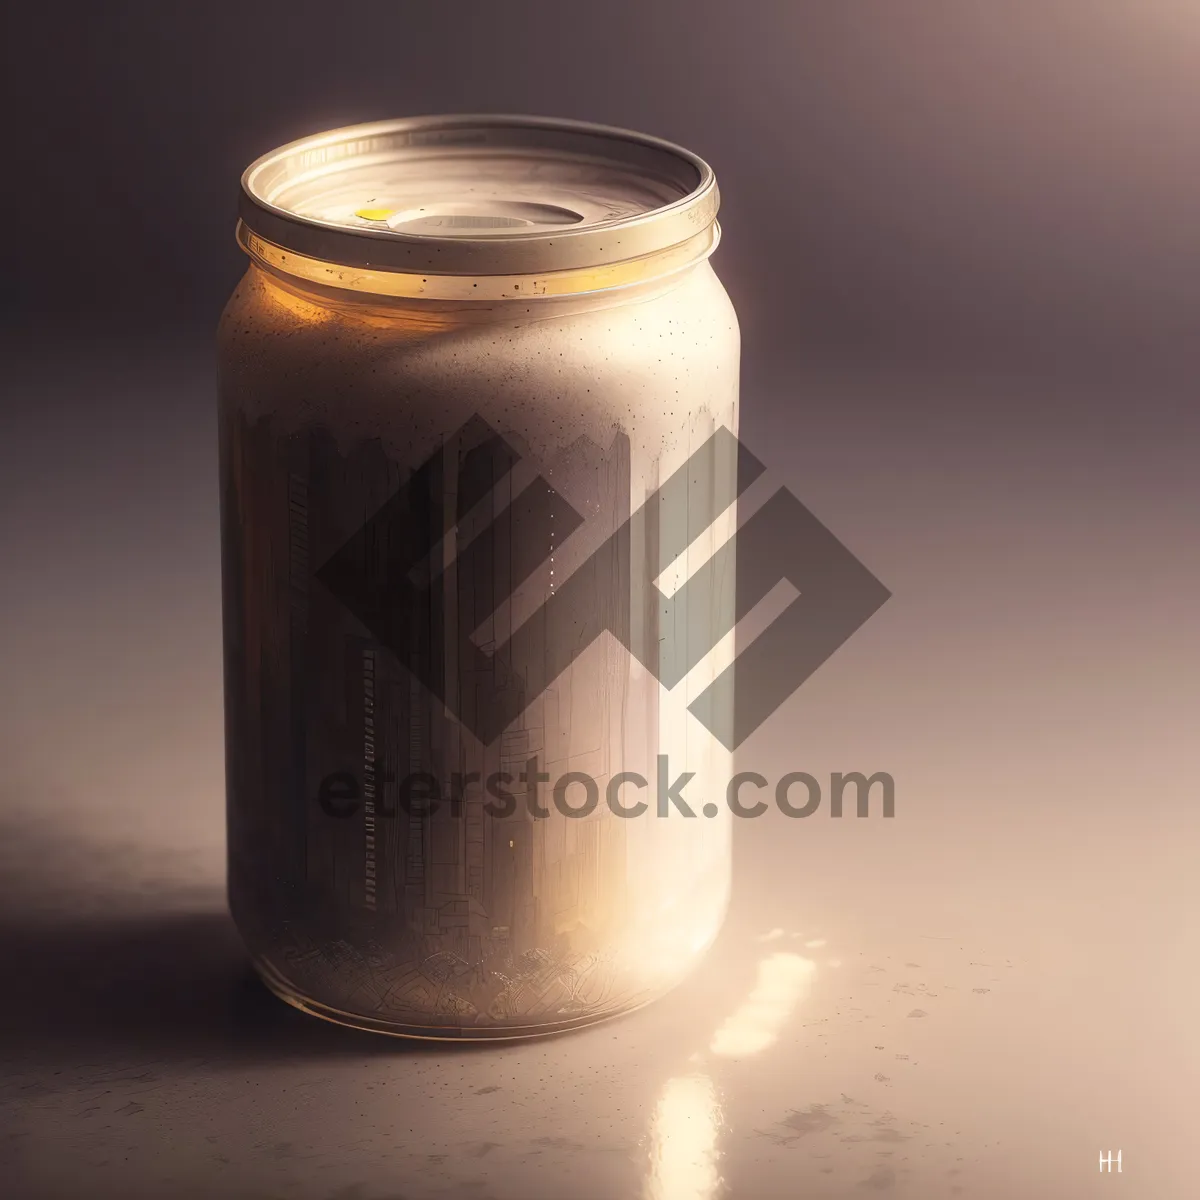 Picture of Healthy Milk in Glass Jar: Nourishing Liquid Beverage